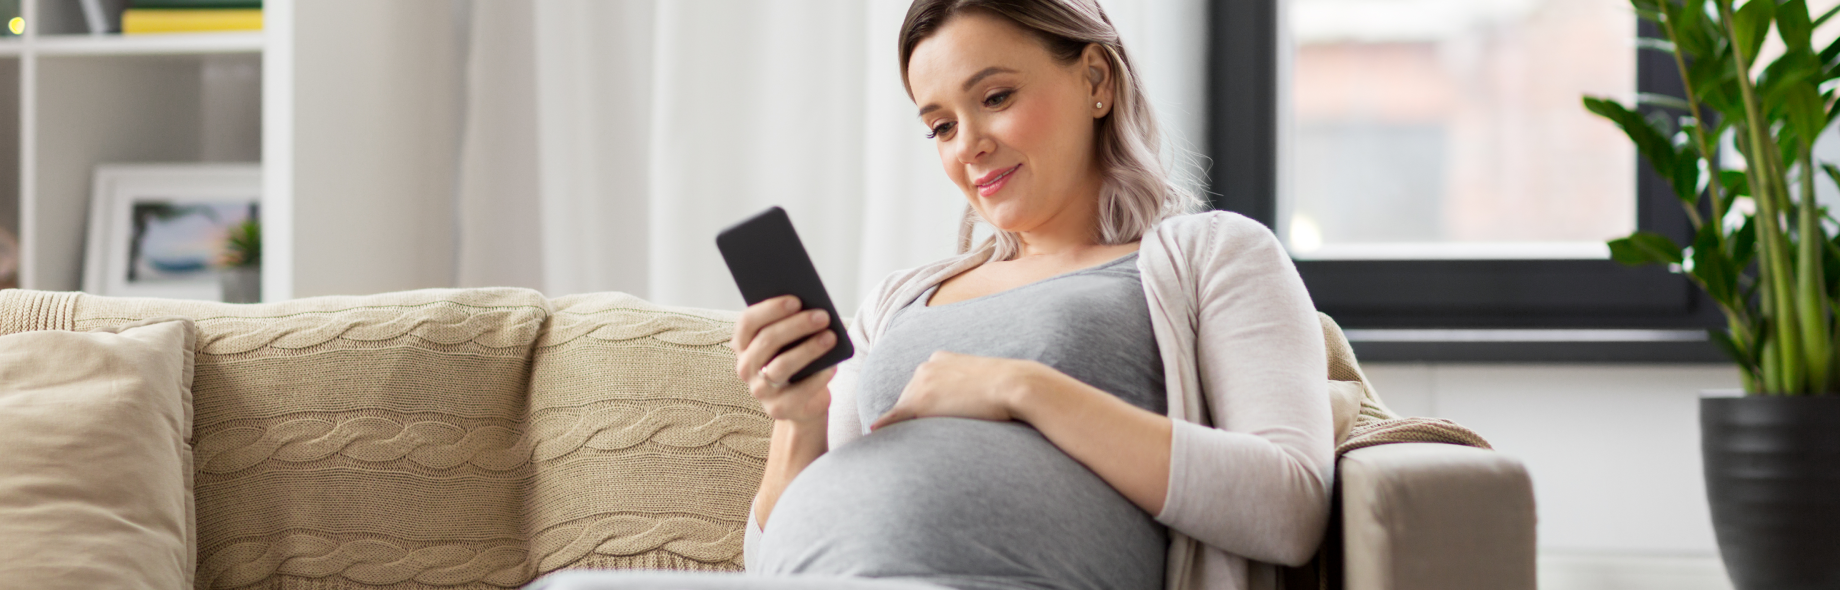 zwangere vrouw met telefoon in haar hand op de bank